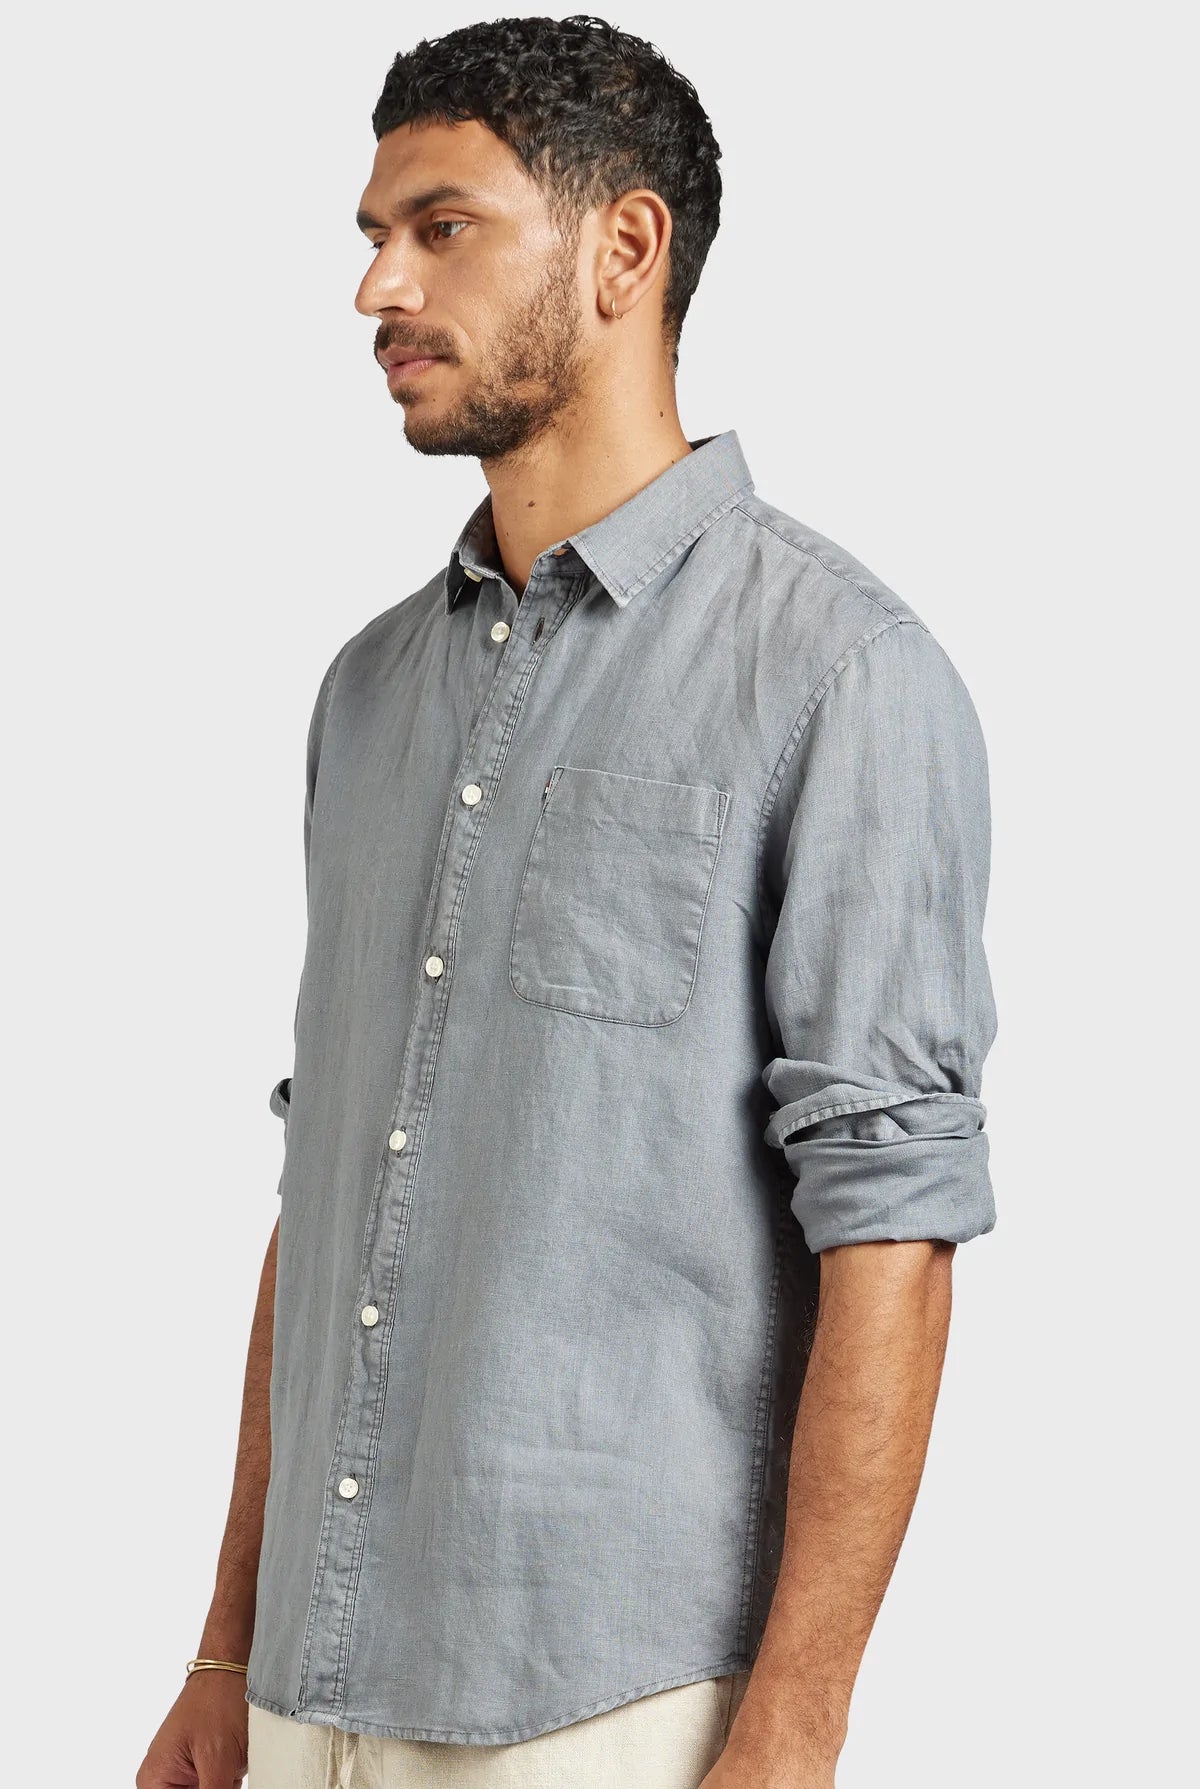 Hampton Long Sleeve Linen Shirt in Gunsmoke Grey